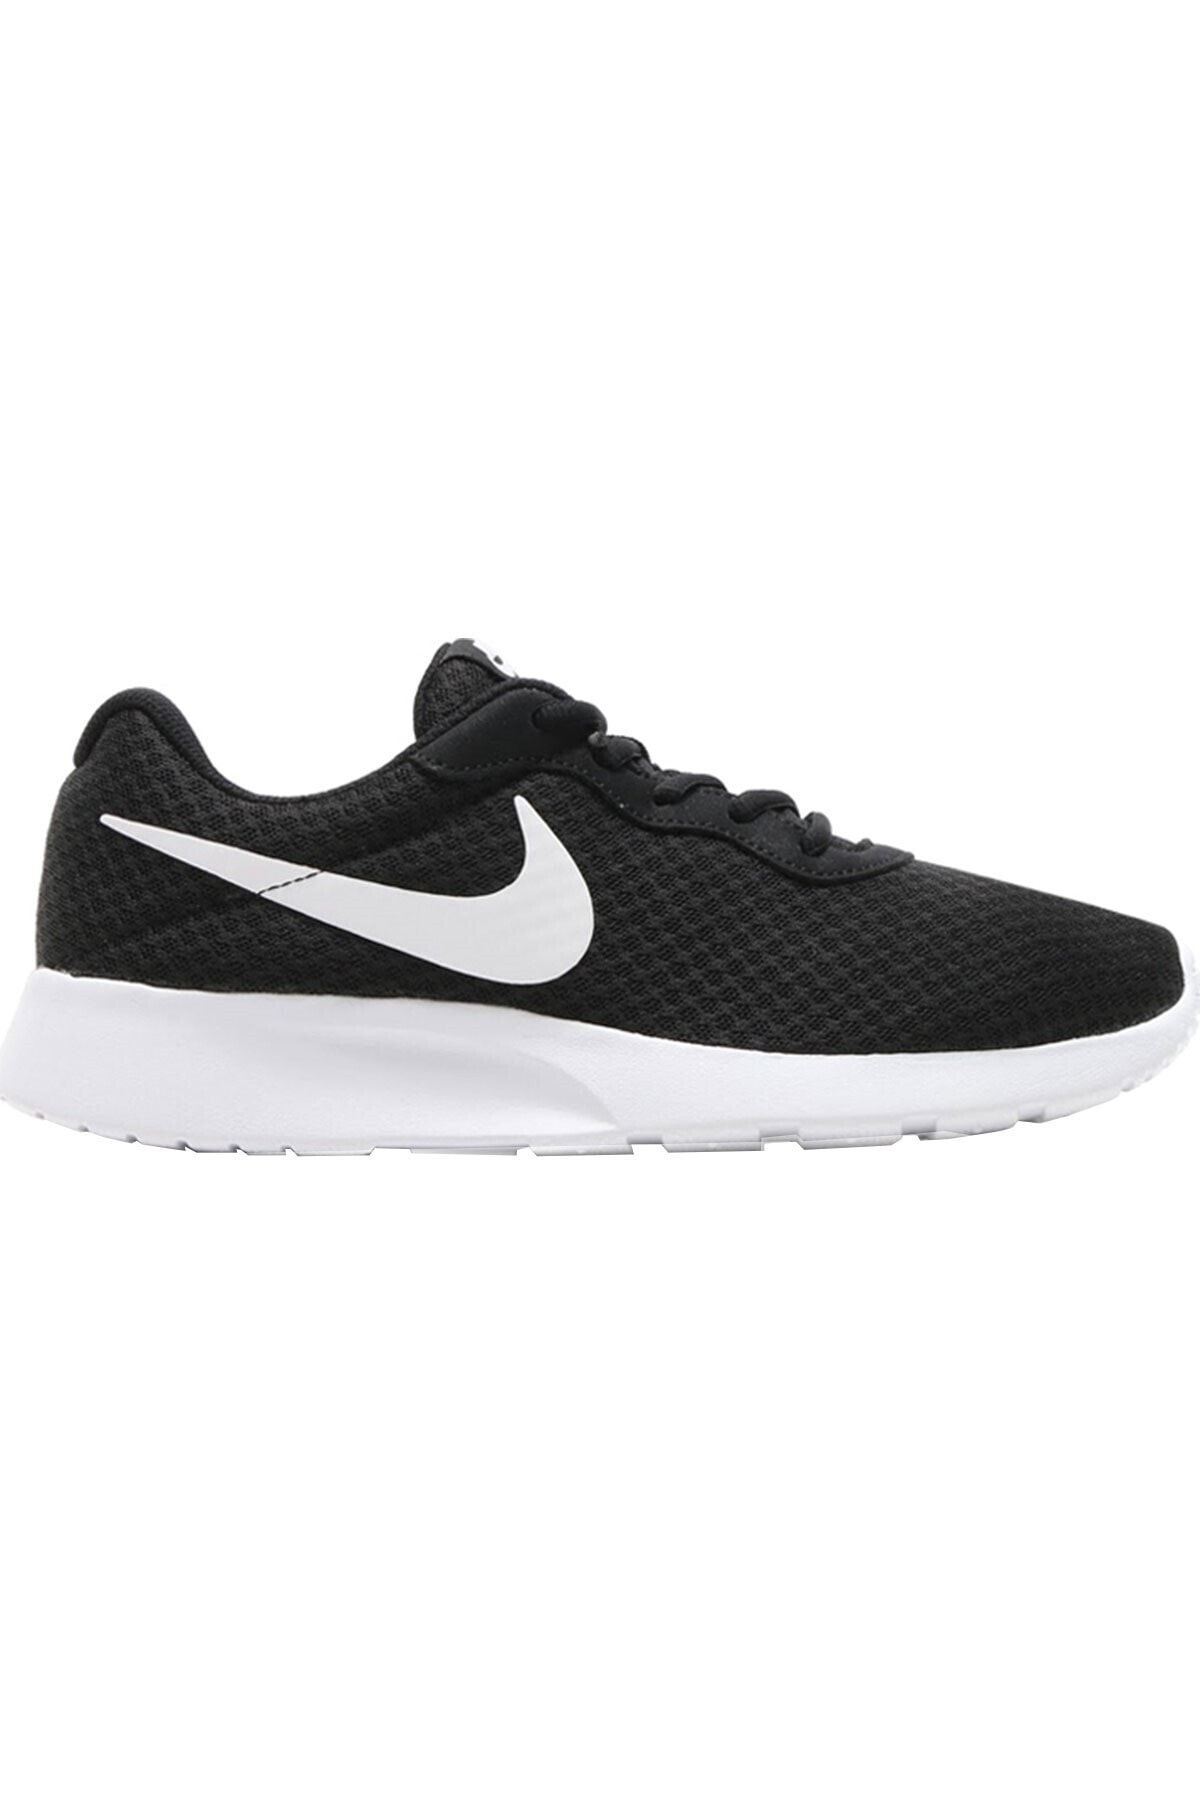 Nike Tanjun Erkek Koşu Ayakkabısı 812654-011